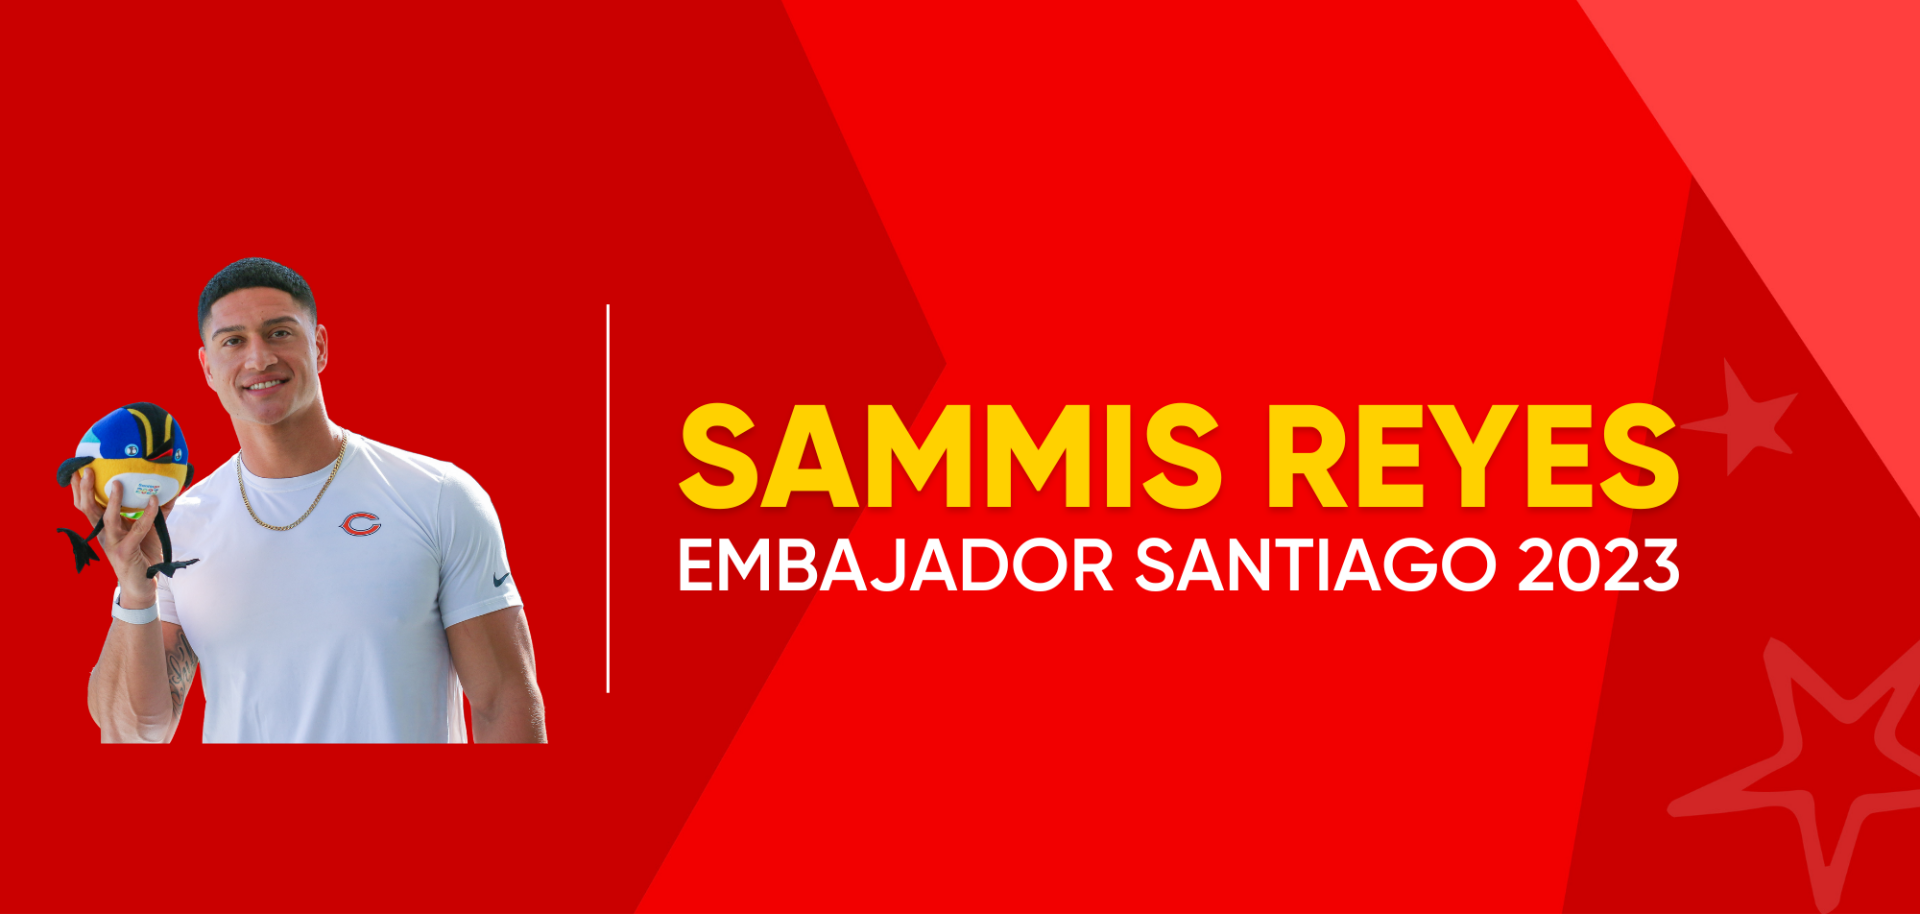 Sammis Reyes se sumó al equipo de embajadores. (Foto: Santiago 2023).